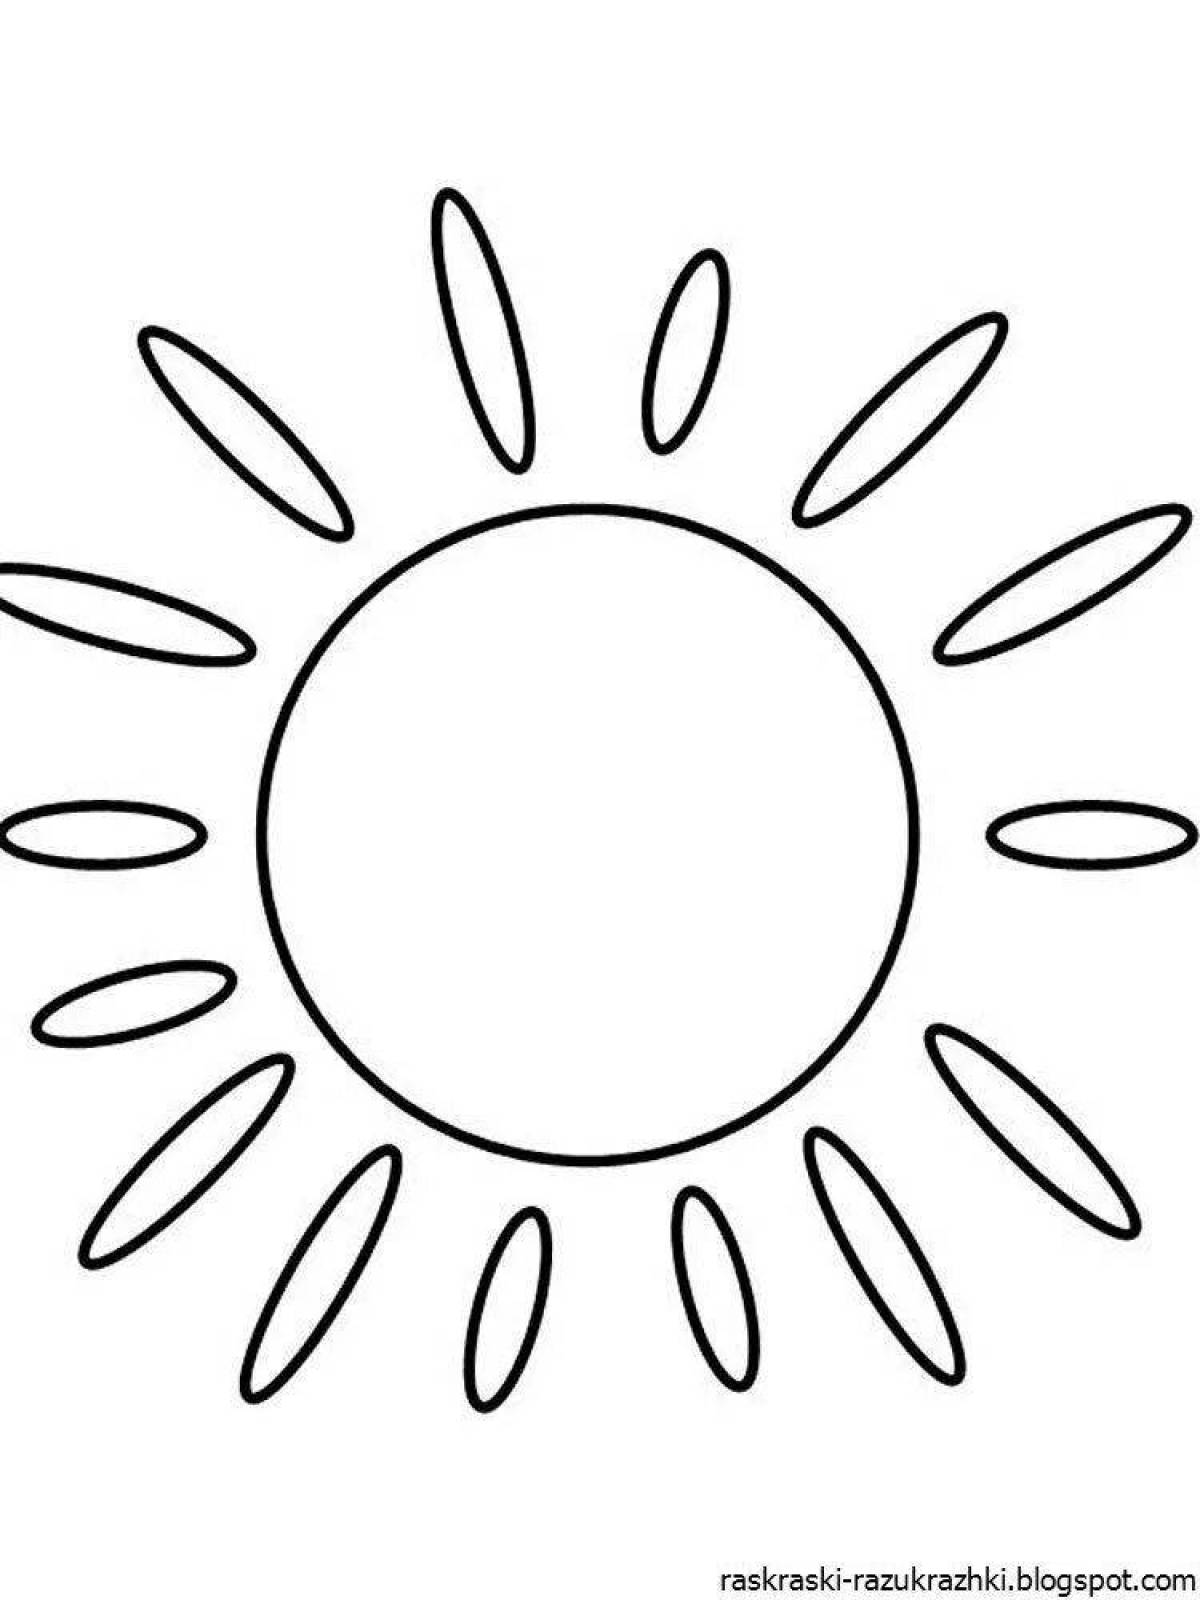 Раскраска для детей 3-4 года солнышко распечатать